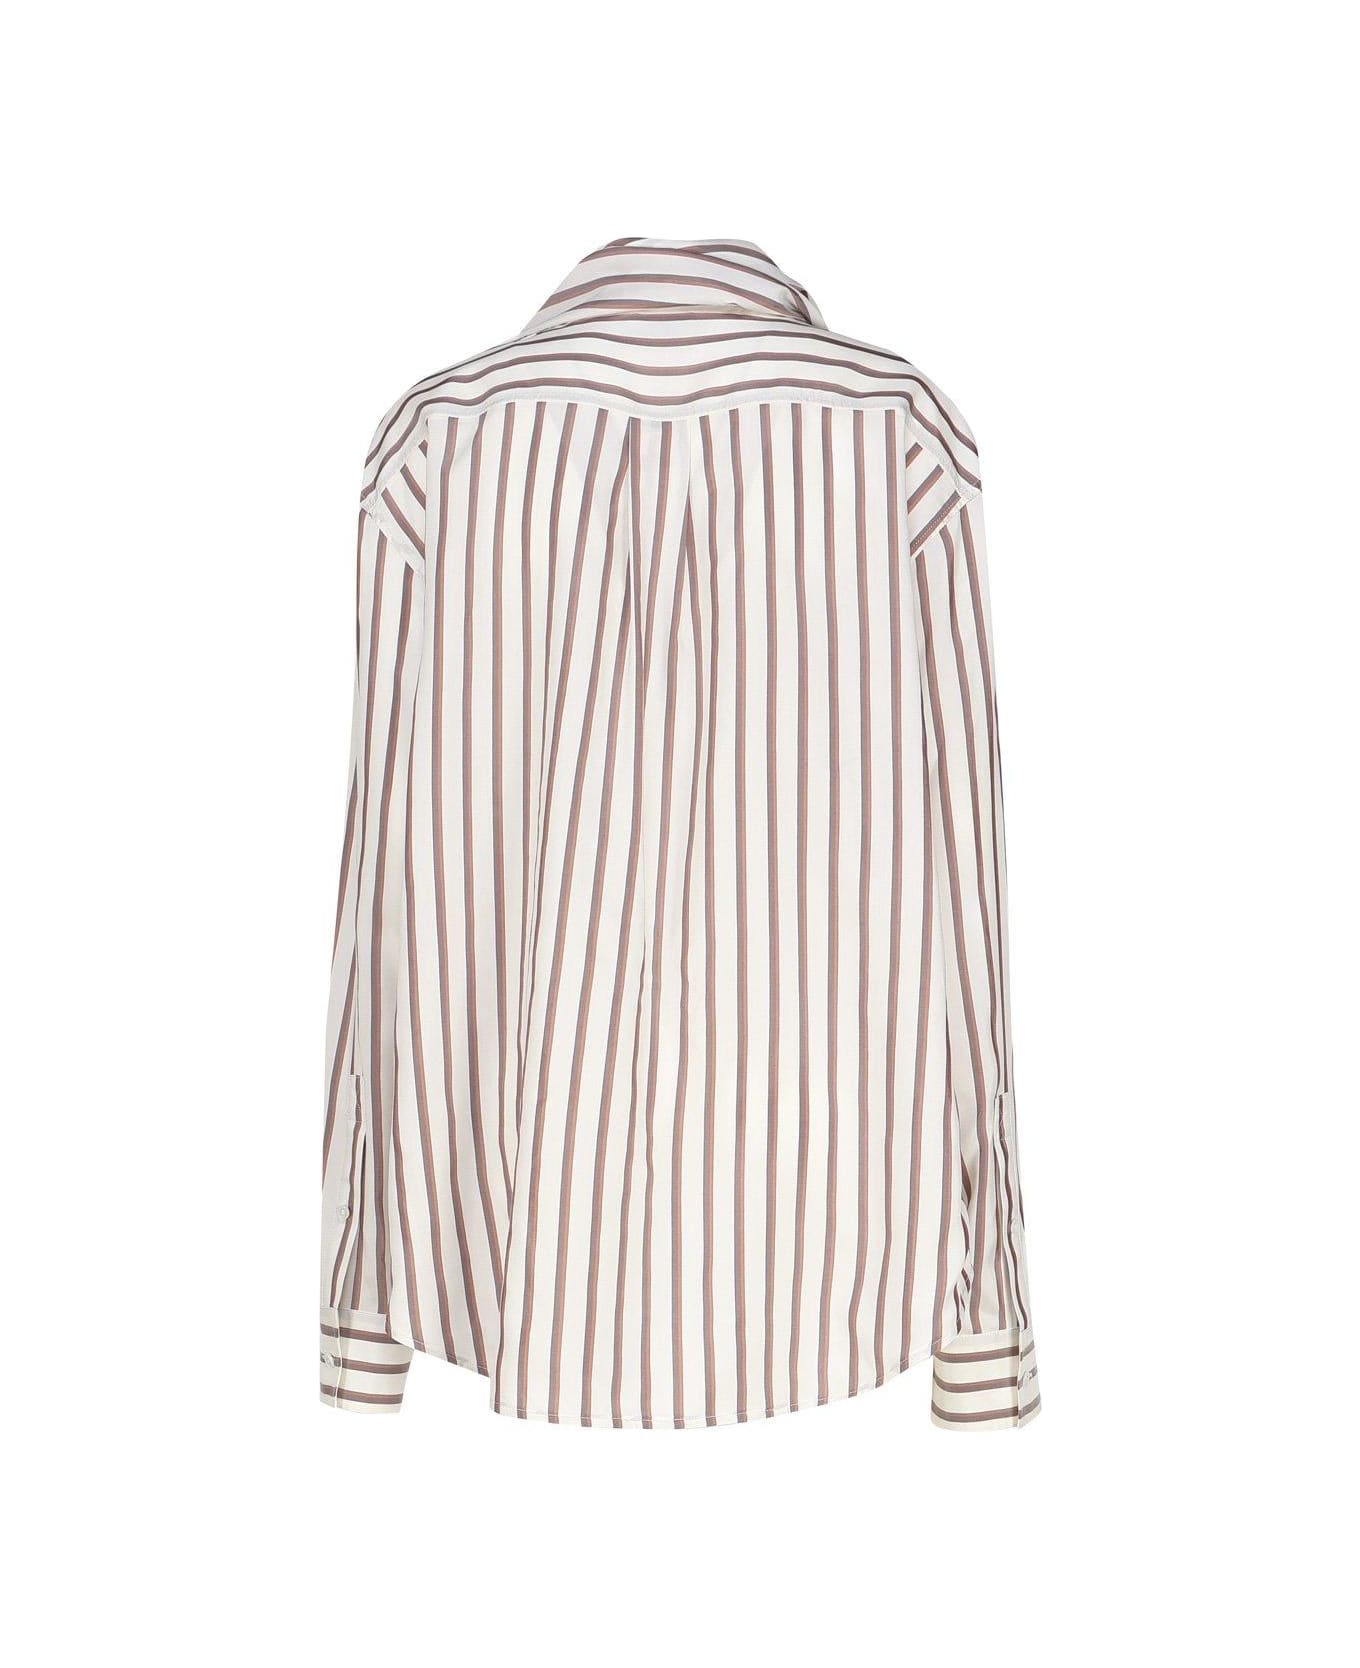 Bottega Veneta Striped Shirt - White, brown, chestnut